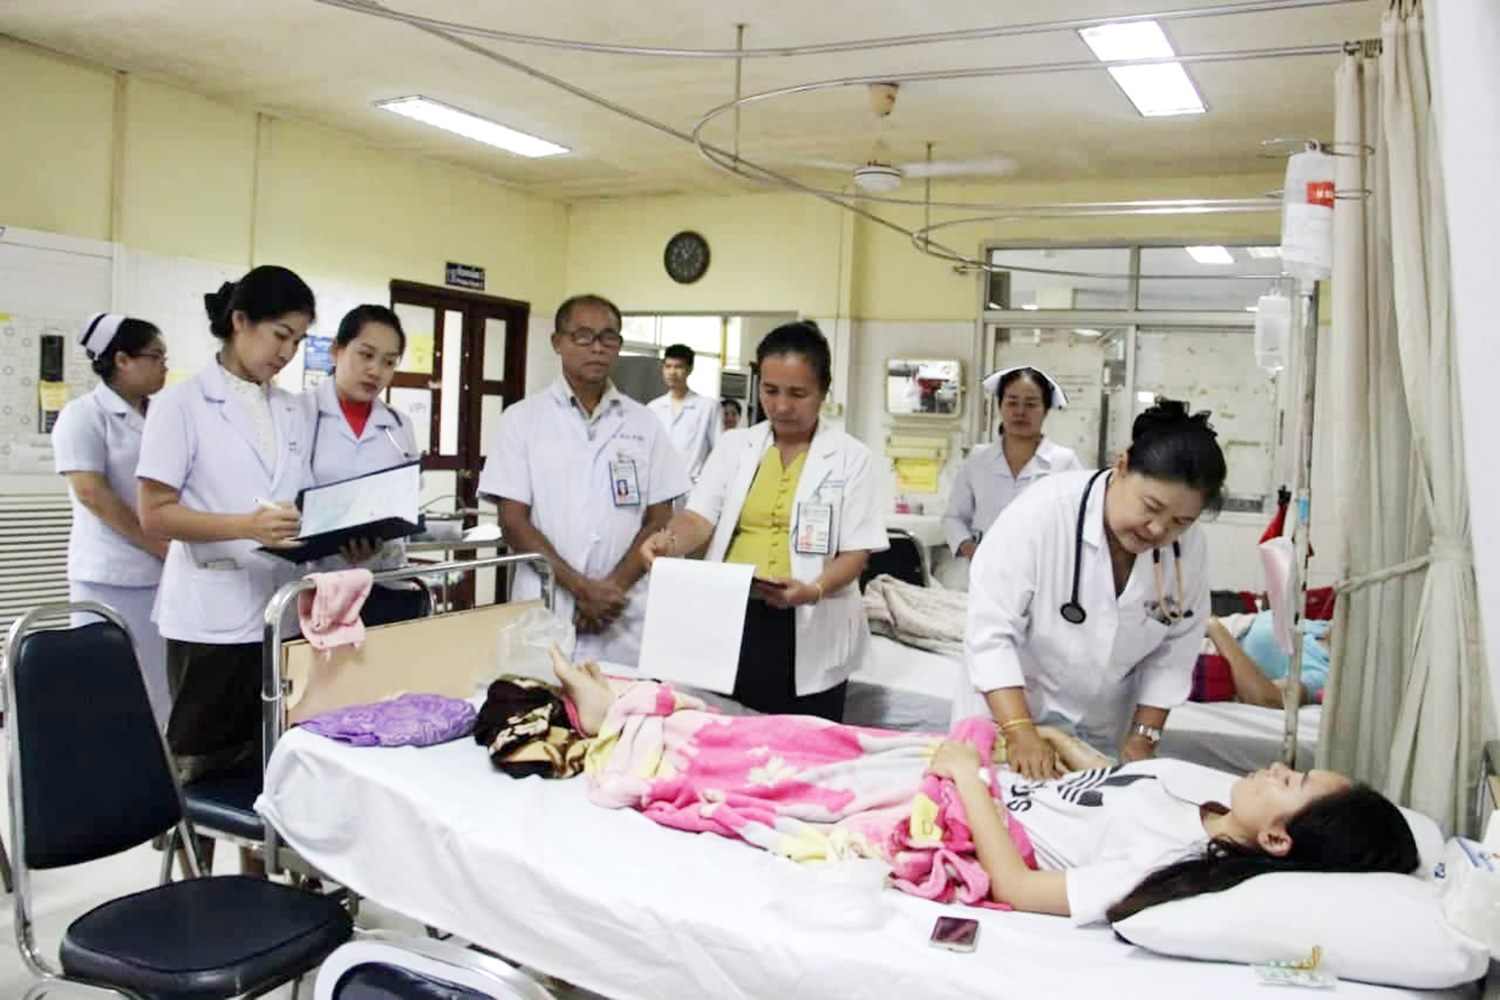   Đã có hơn 1.500 ca mắc sốt xuất huyết ở Lào  